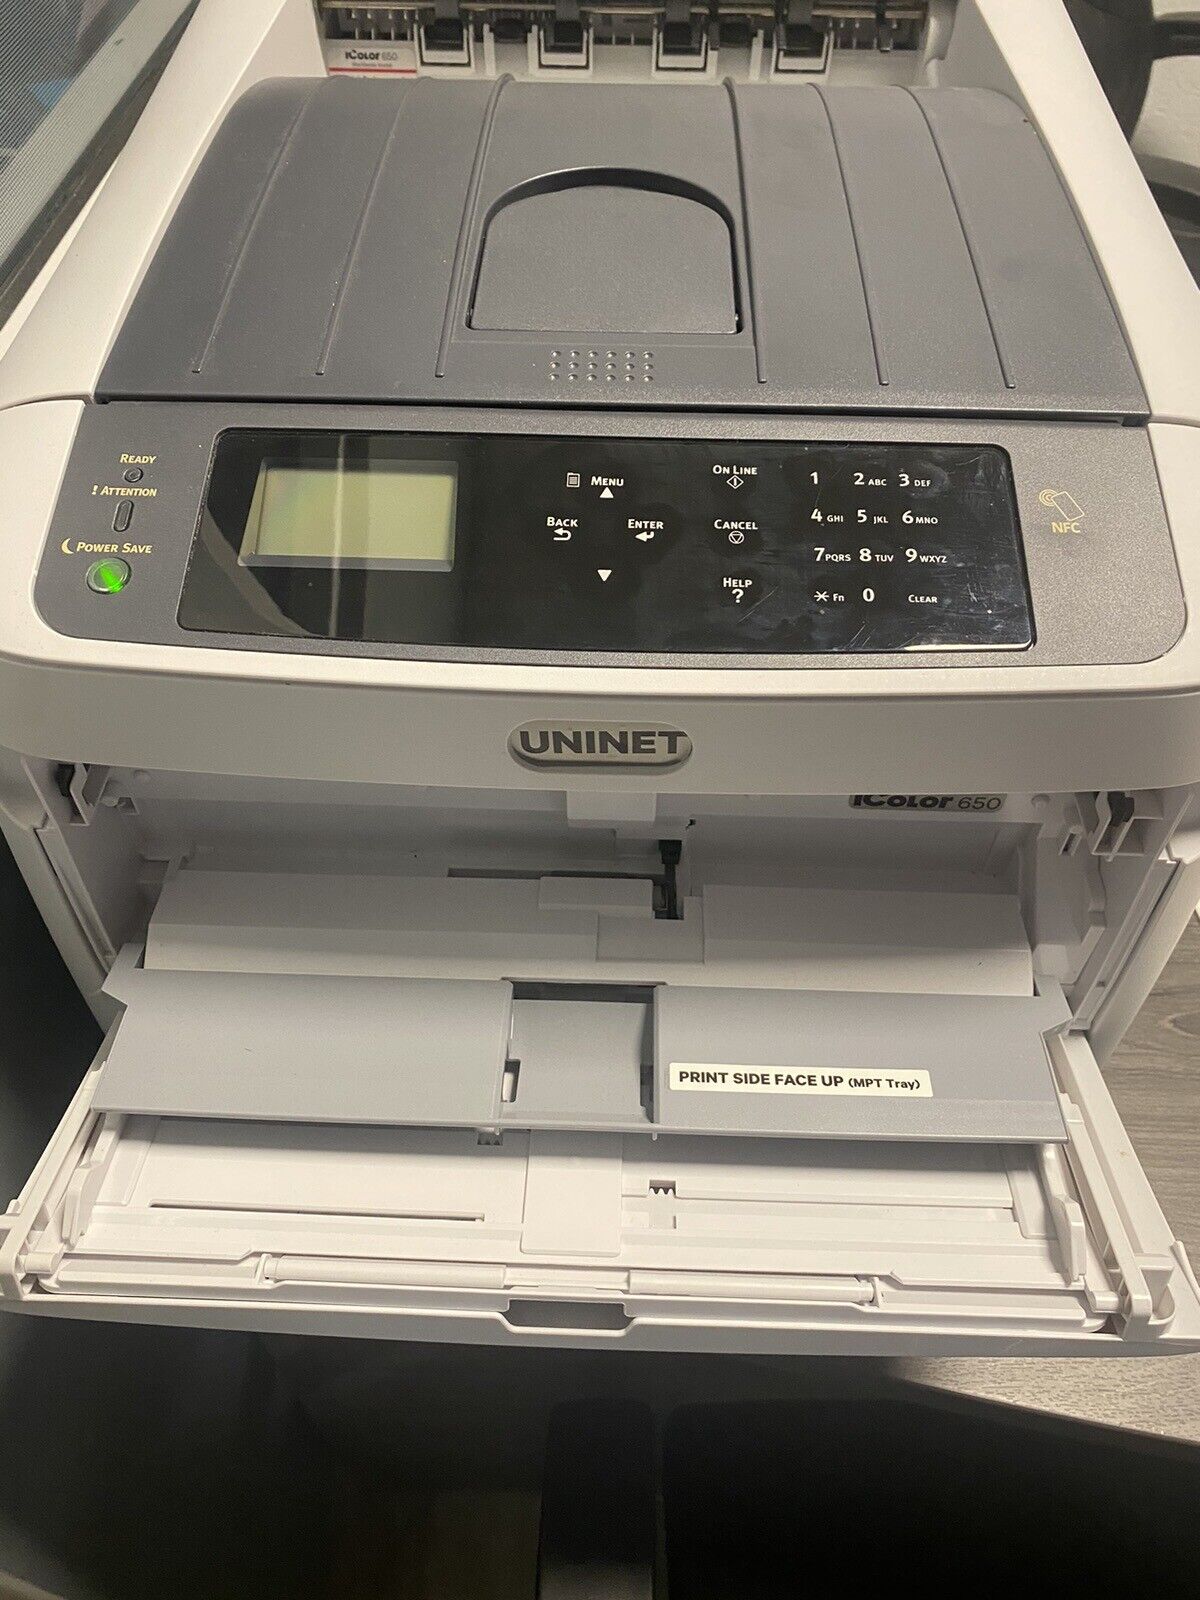 Uninet icolor 650 Printer